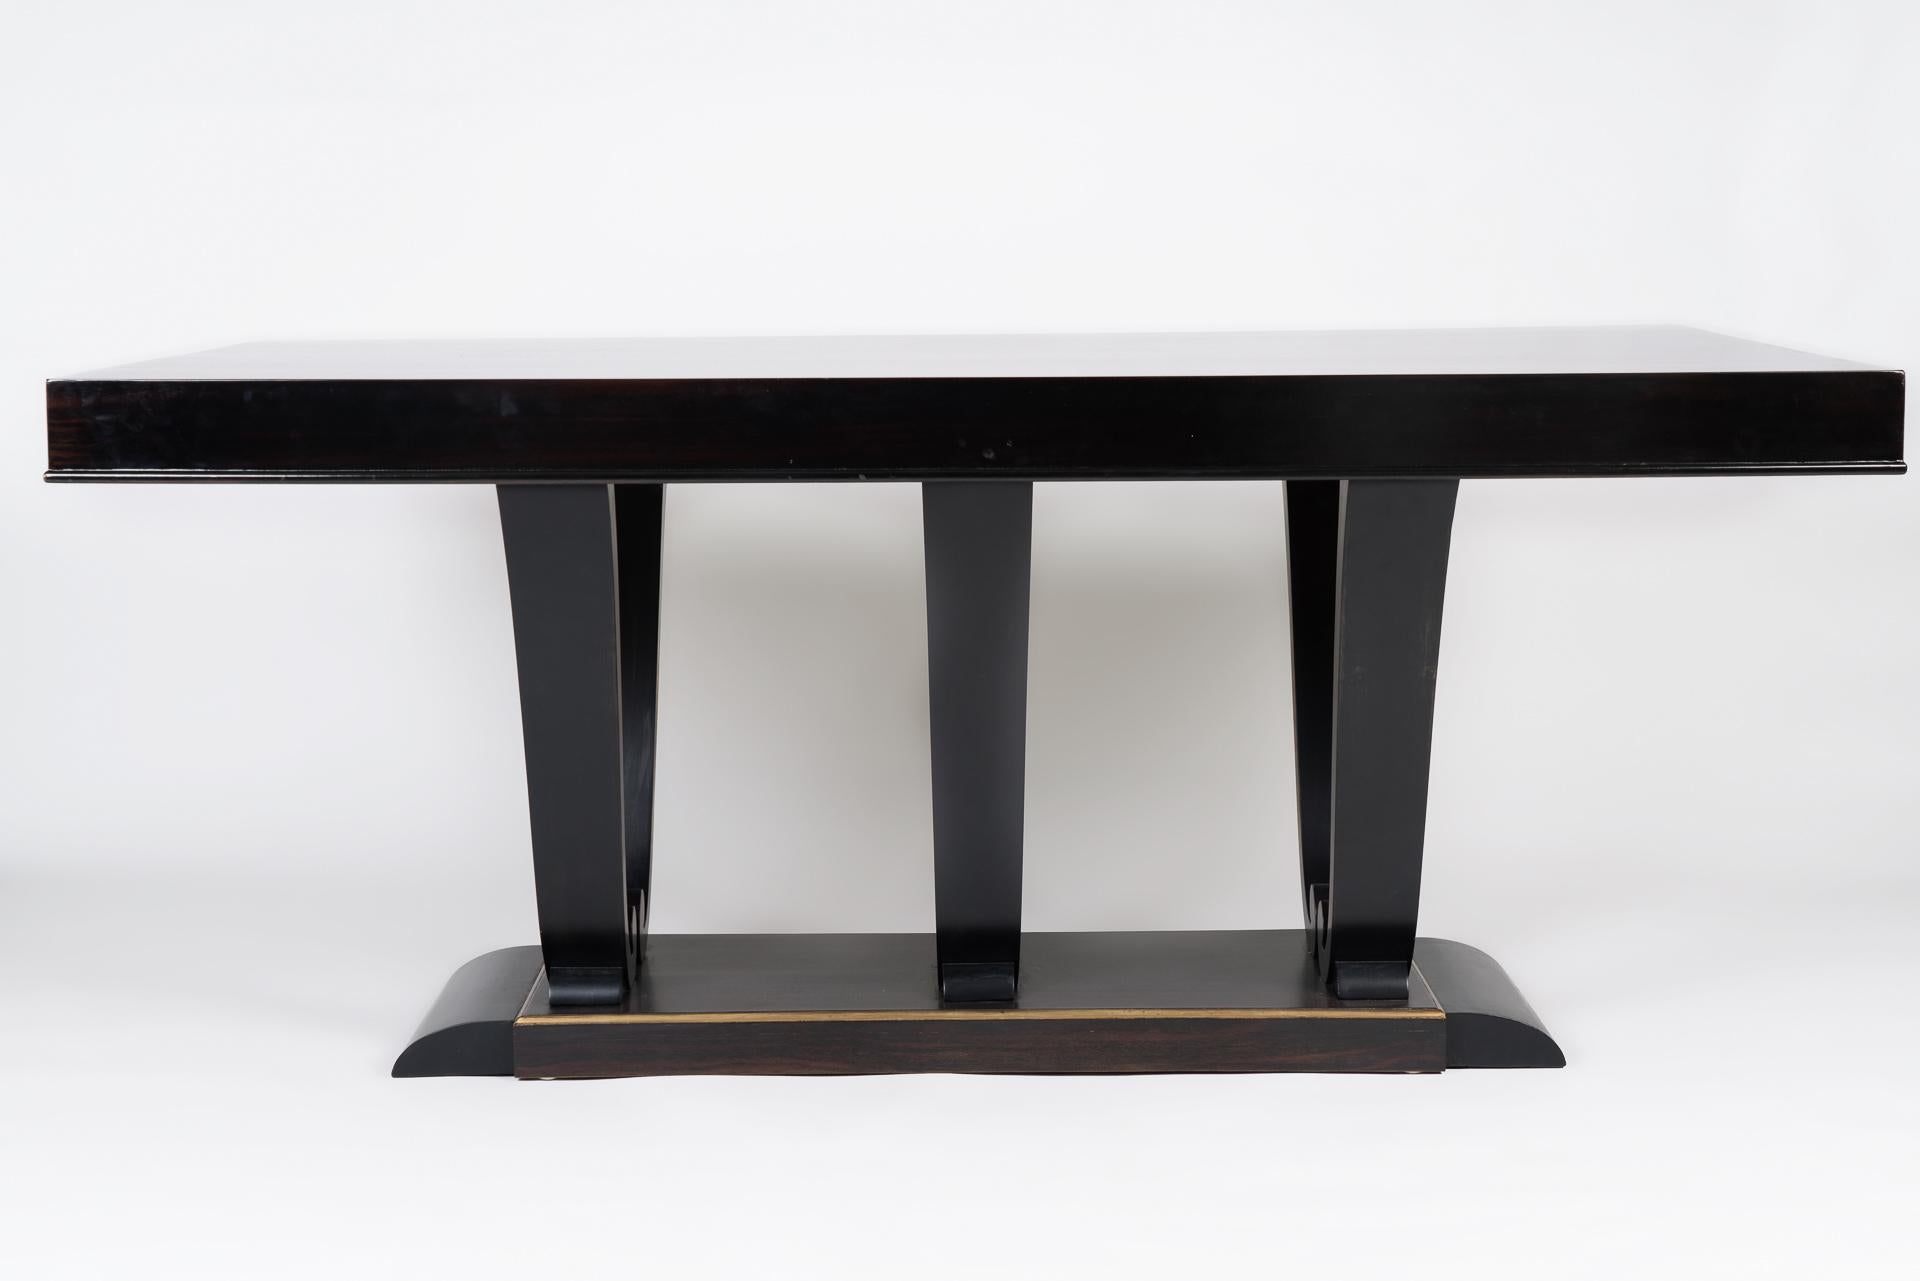 Dieser Esstisch ist von den Art-déco-Entwürfen von Jacques-Emile Ruhlmann inspiriert. Er kombiniert die Verwendung von Mahagoniholz mit Goldverzierungen. Die elegante Form und die Proportionen des Tisches sowie die exzellente handwerkliche